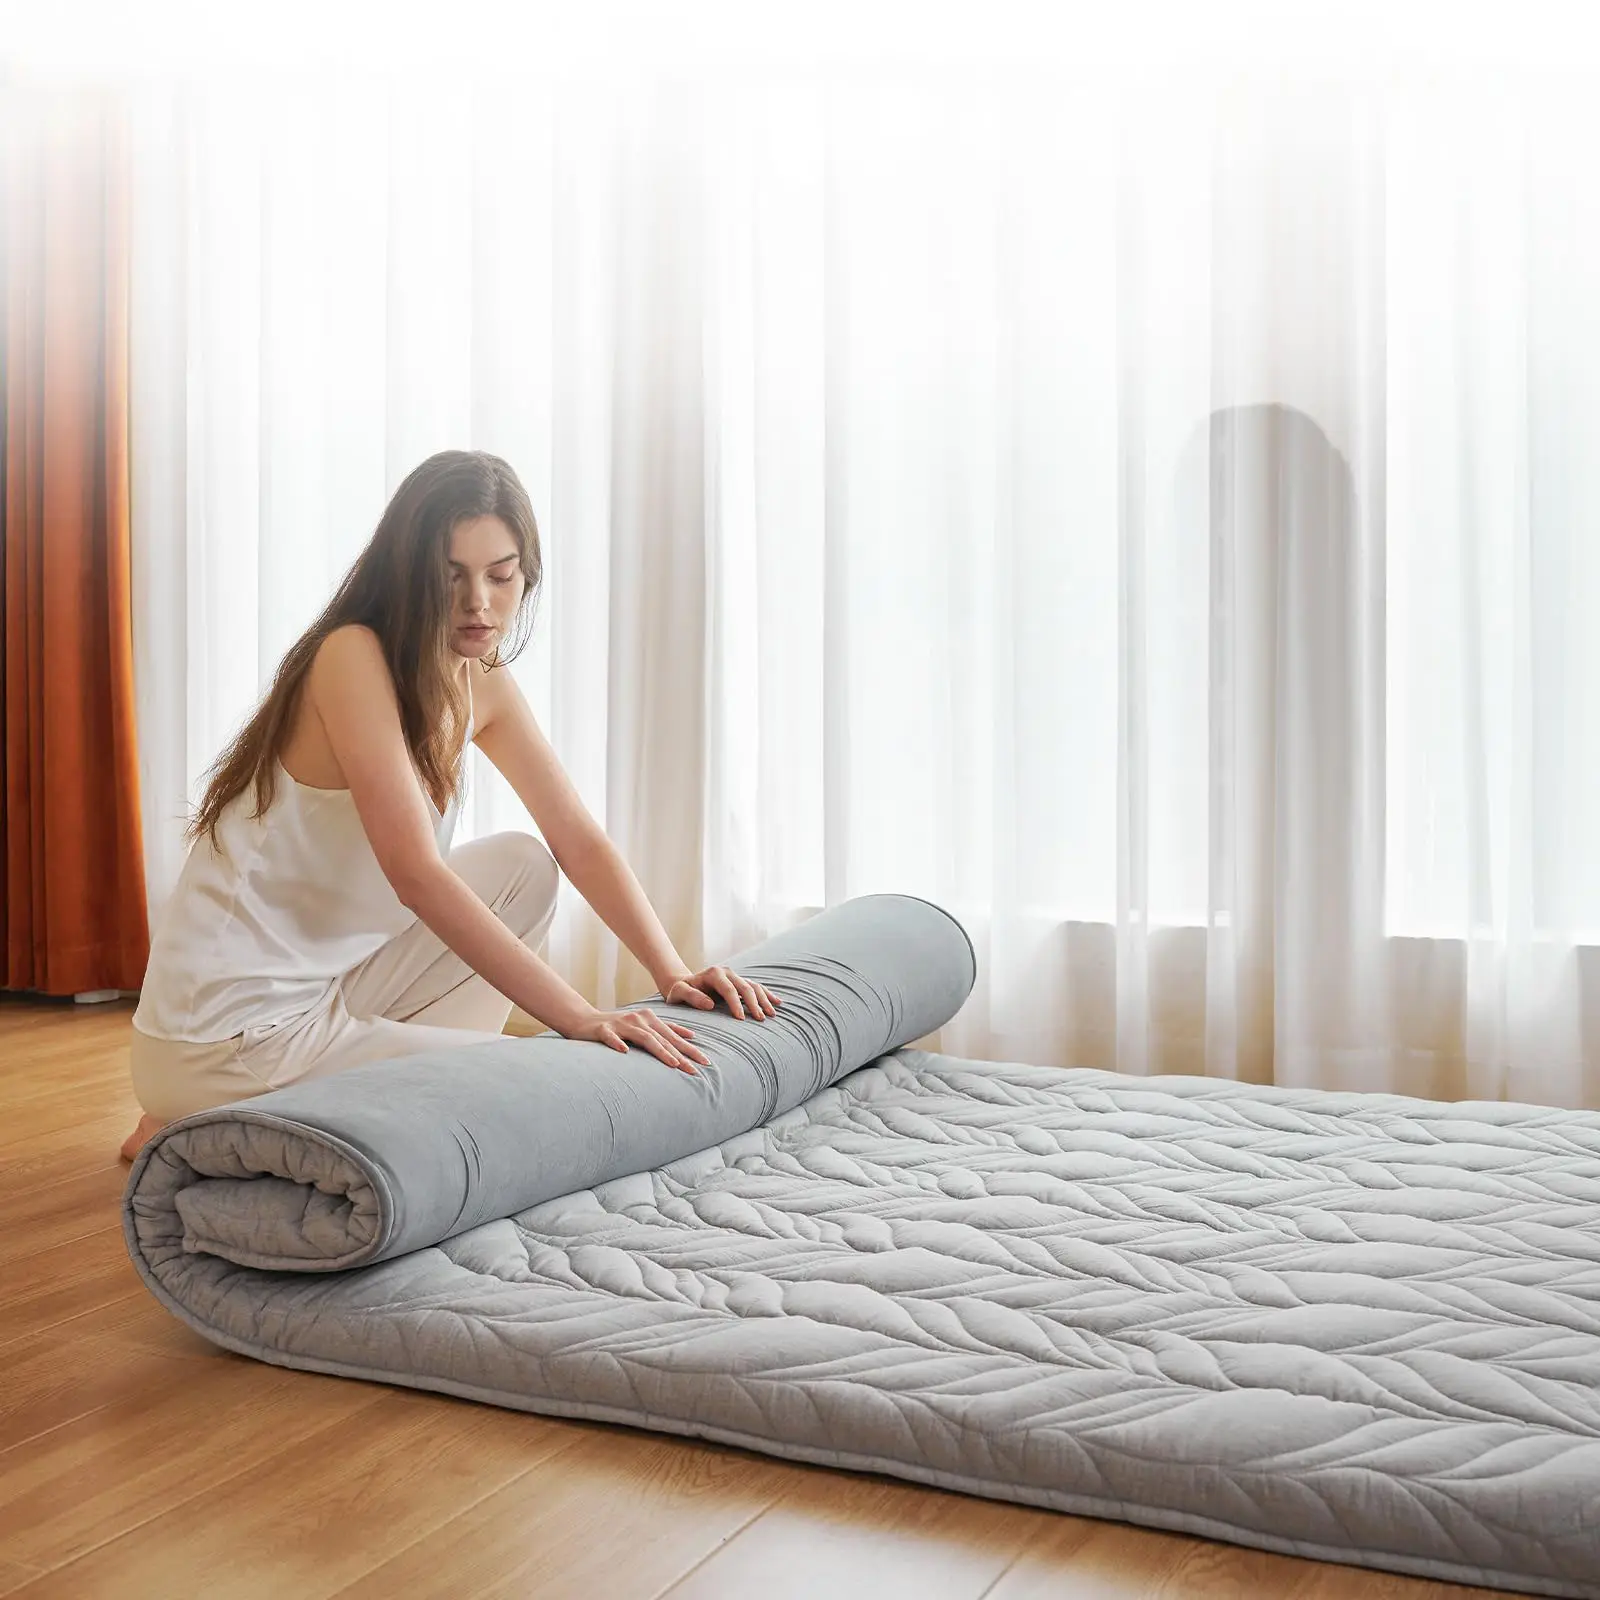 80 "x 39" tappetino per dormire portatile arrotolare in schiuma Tatami tappetino Futon pavimento mastres